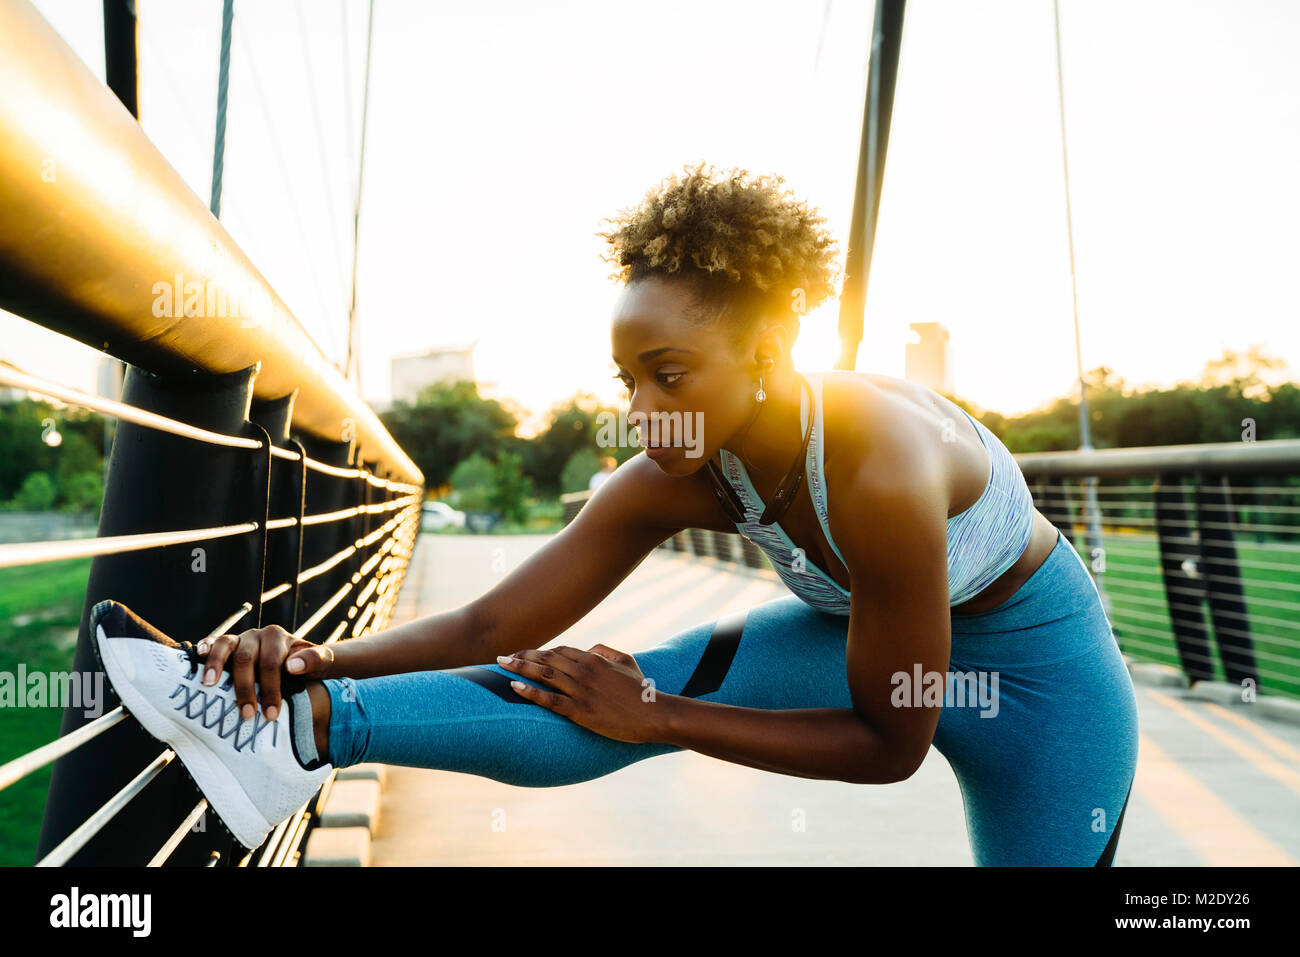 Mixed Race woman stretching leg sur bridge railing Banque D'Images